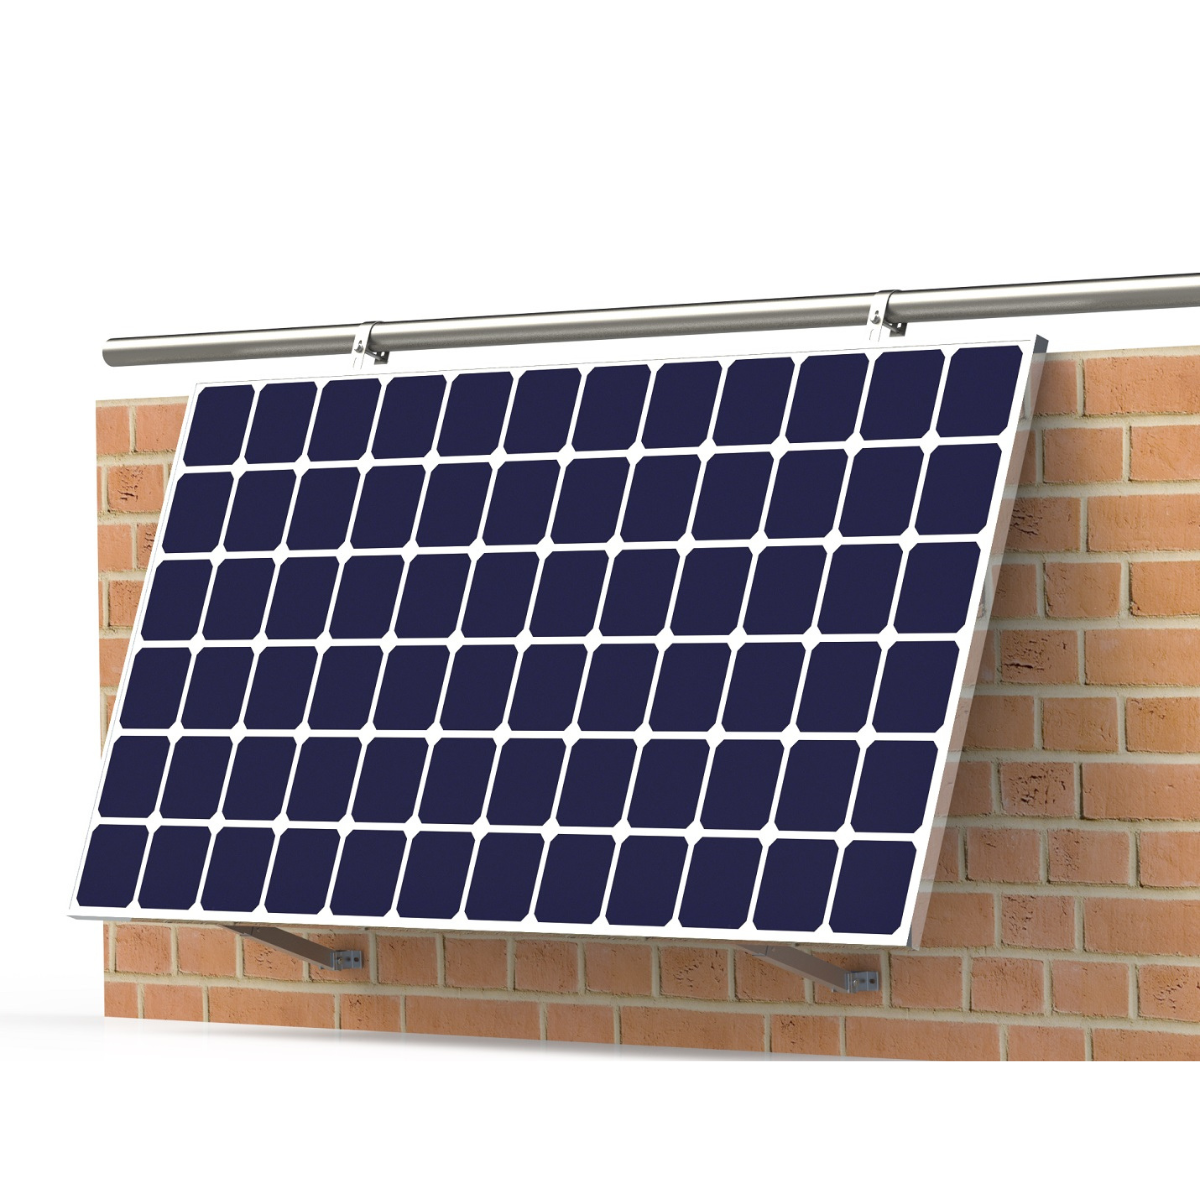 SMARTEC SOLAR ALLin Balkon Halterungs-Set Solar